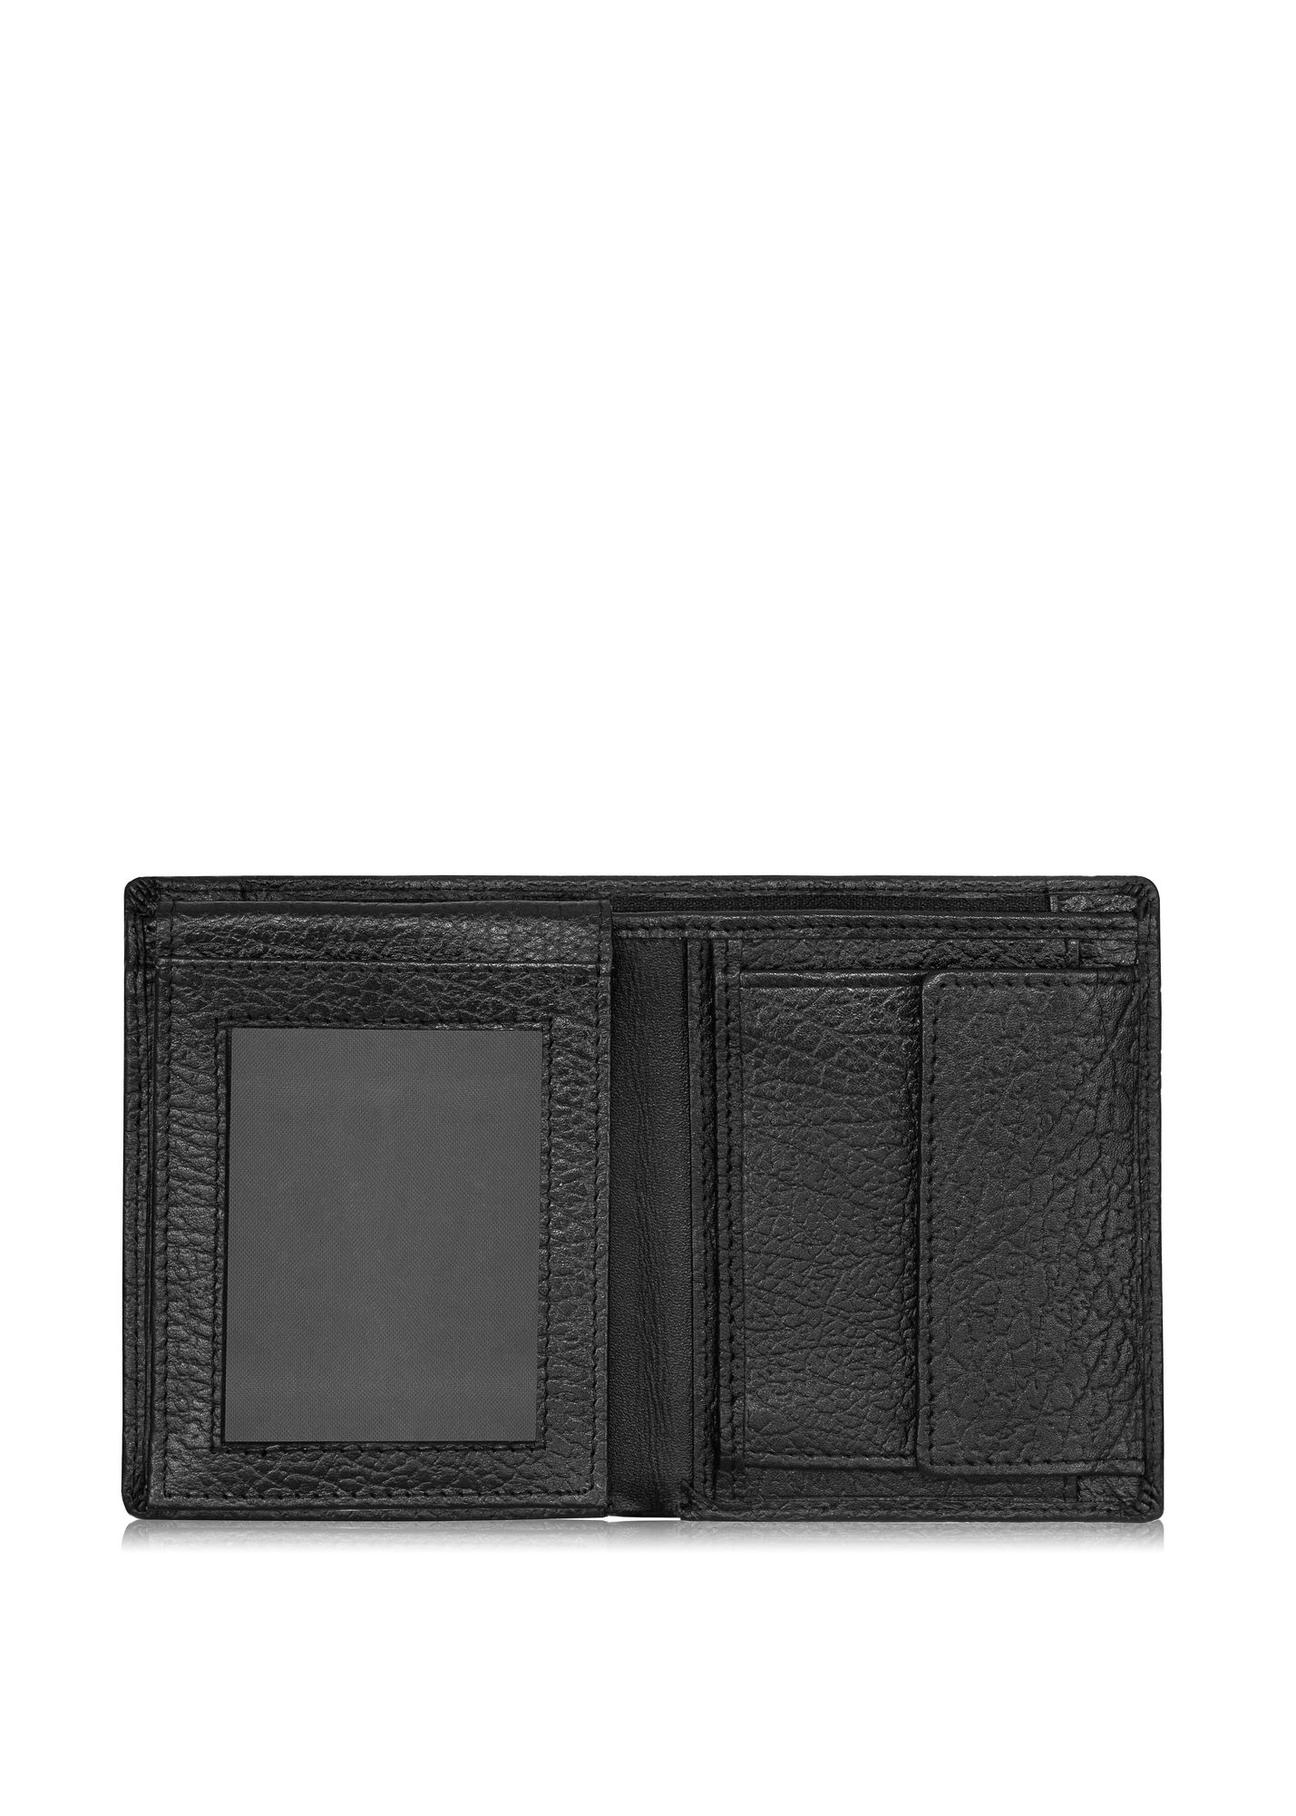 Skórzany groszkowany portfel męski PORMS-0535-99(W24)